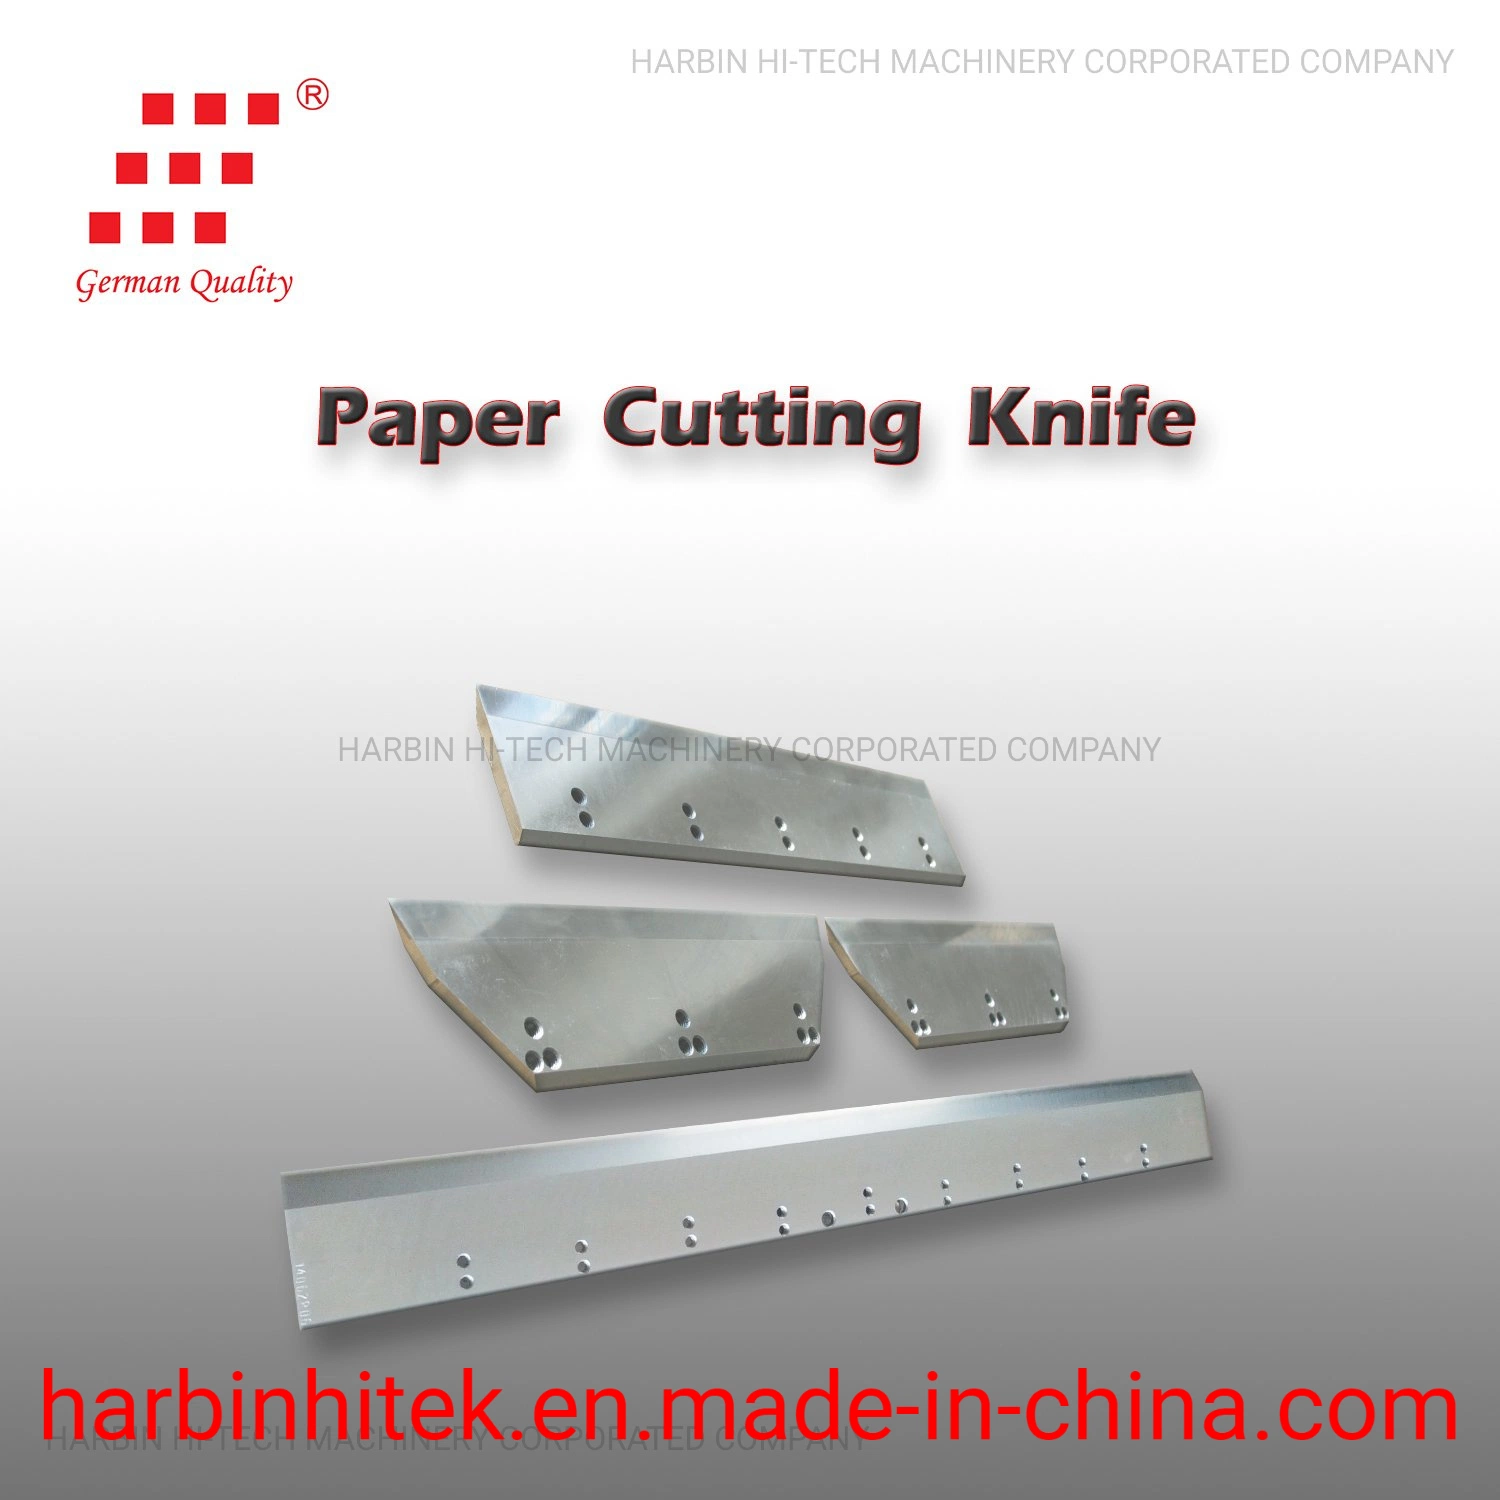 Couteau de découpe de papier, couteau de massicot pour machine de découpe de papier.